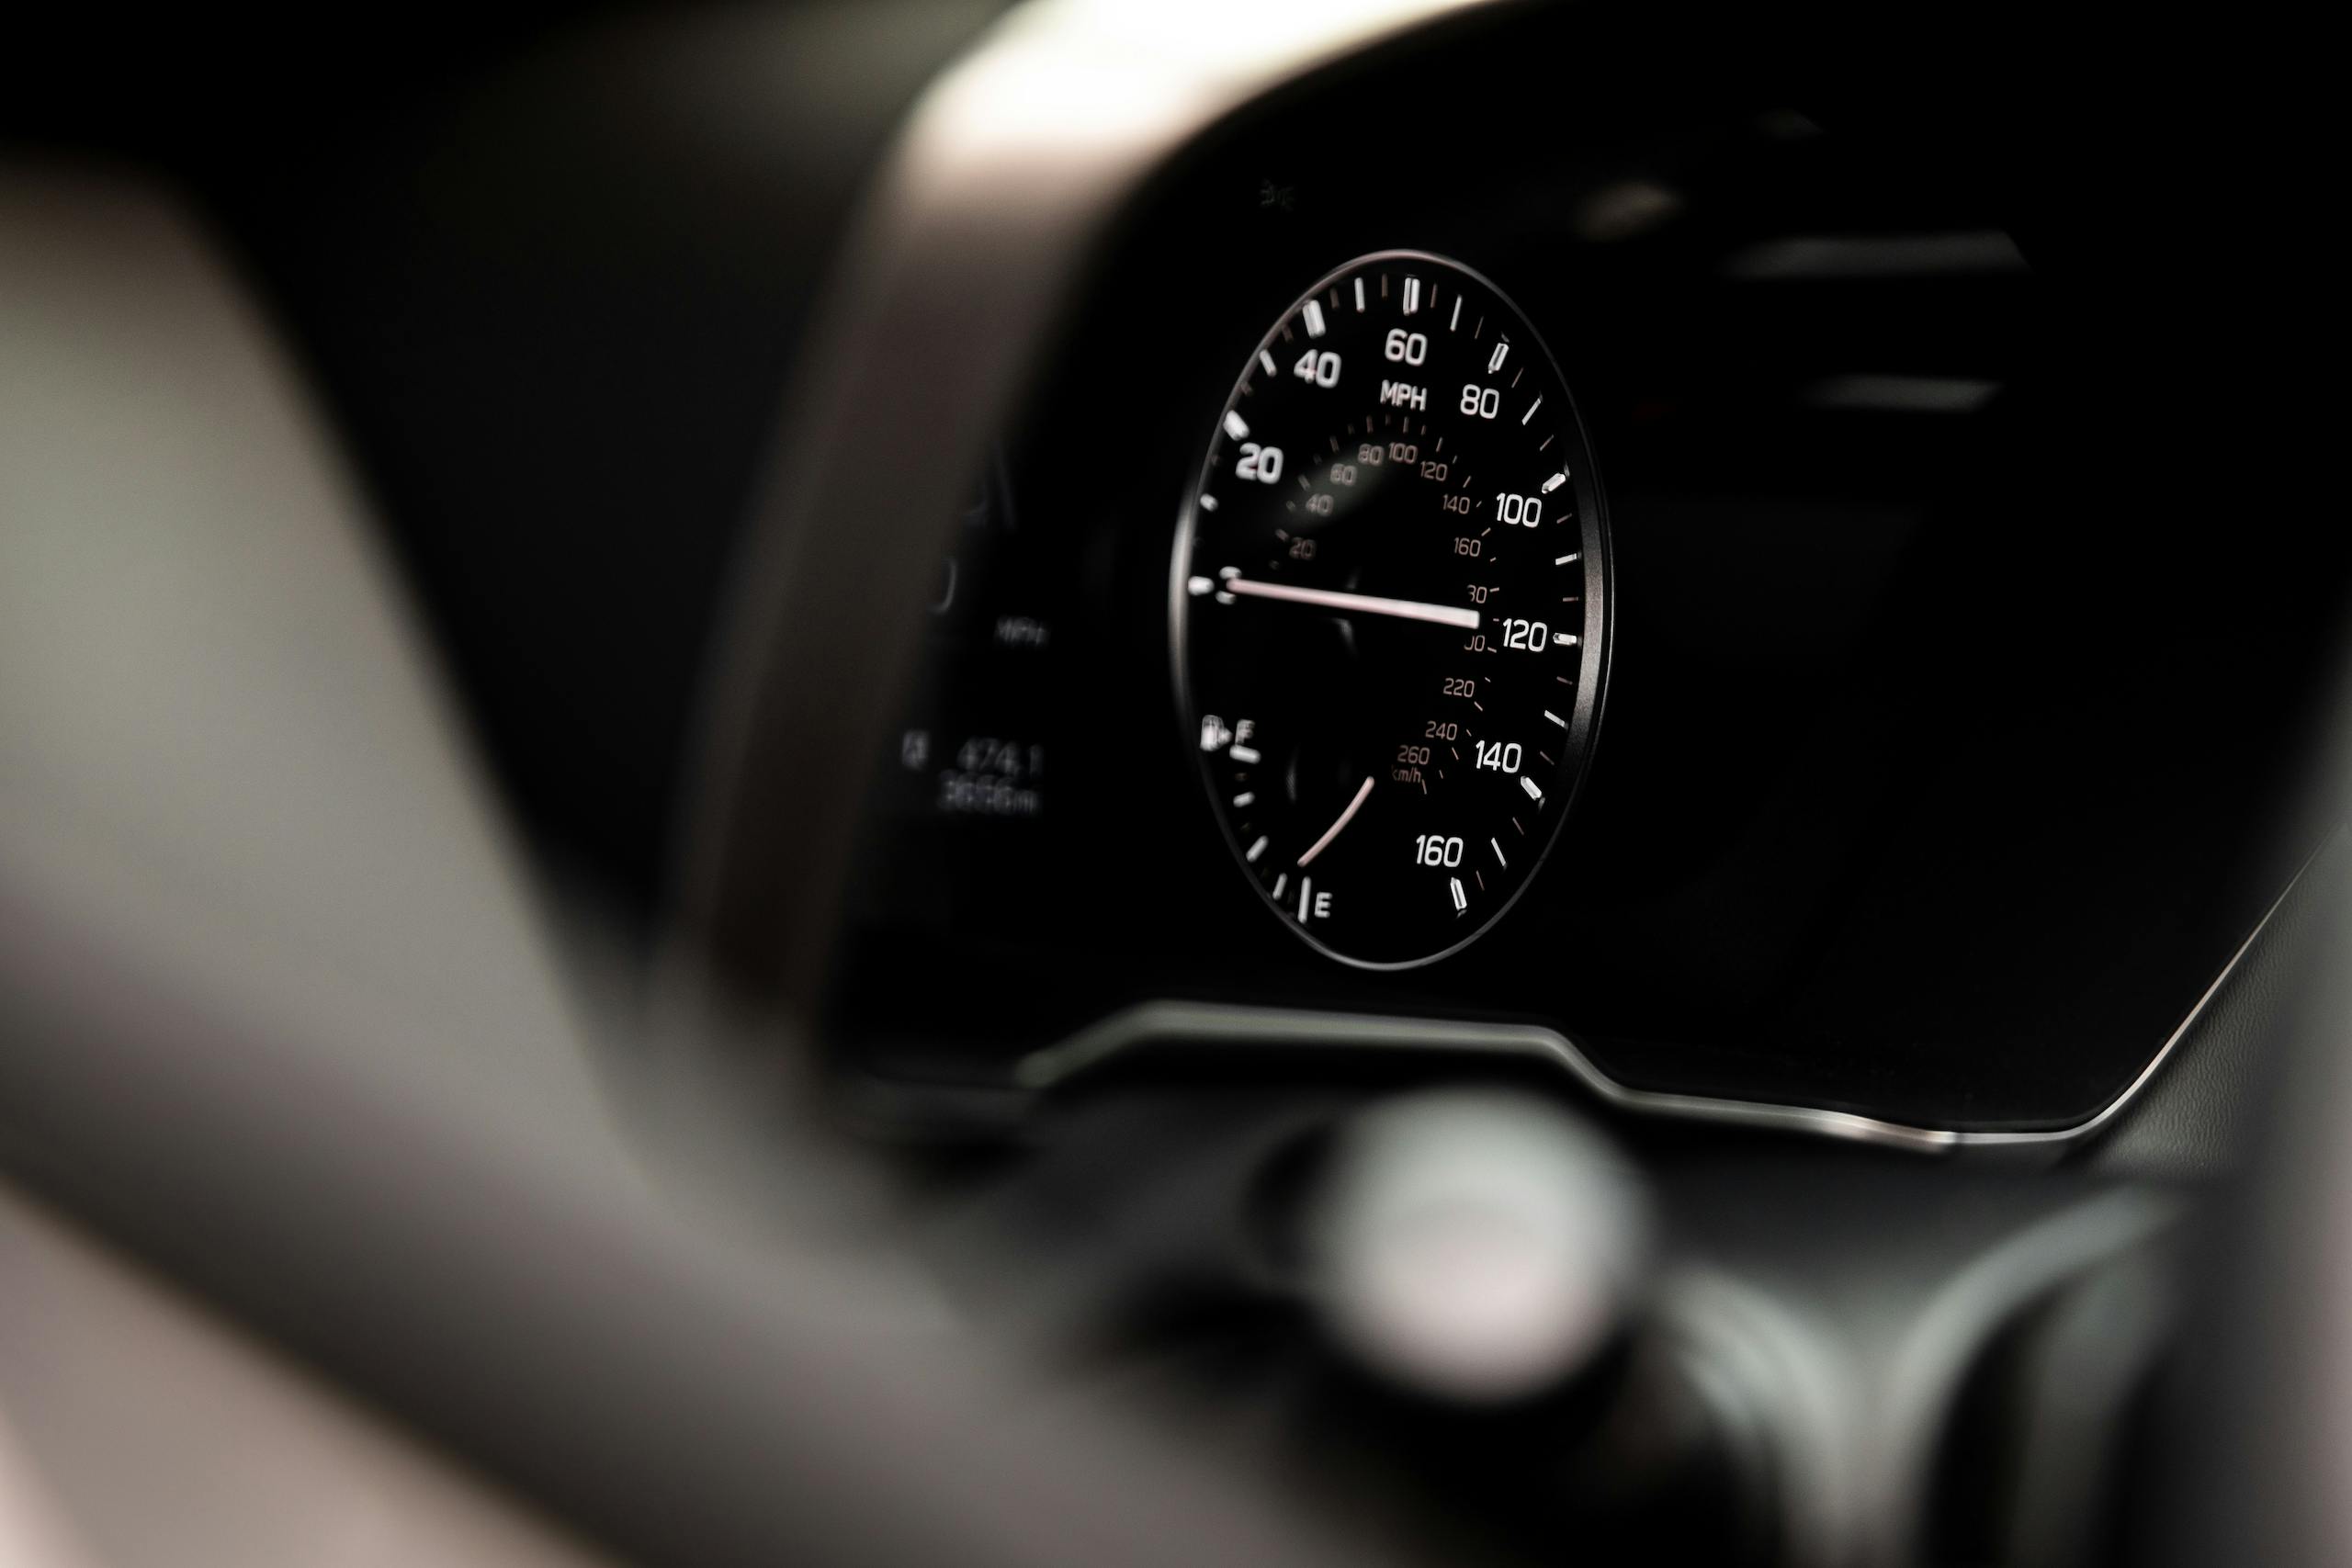 Subaru Outback speedometer gauge detail